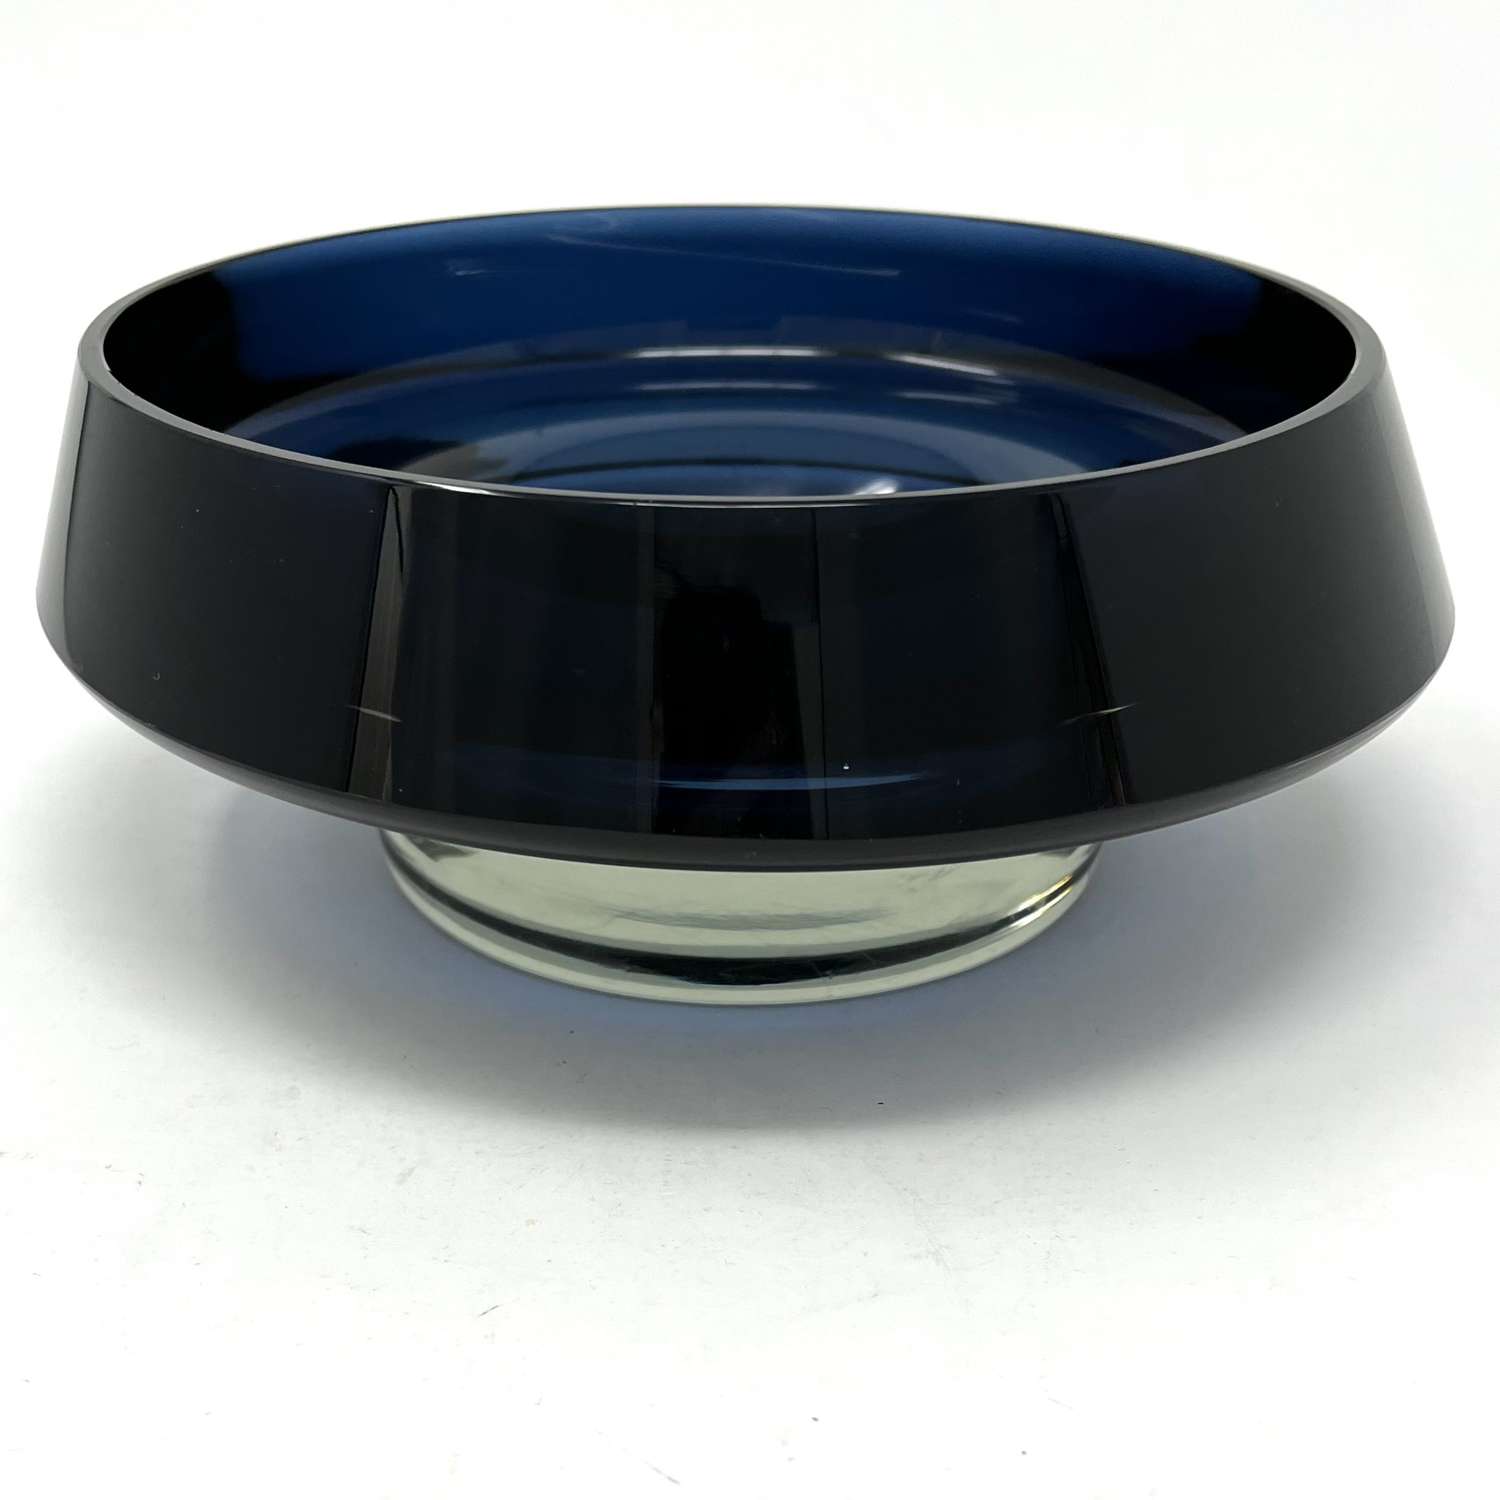 Kaj Franck dark blue bowl, Nuutajärvi Notsjö Finland 1963